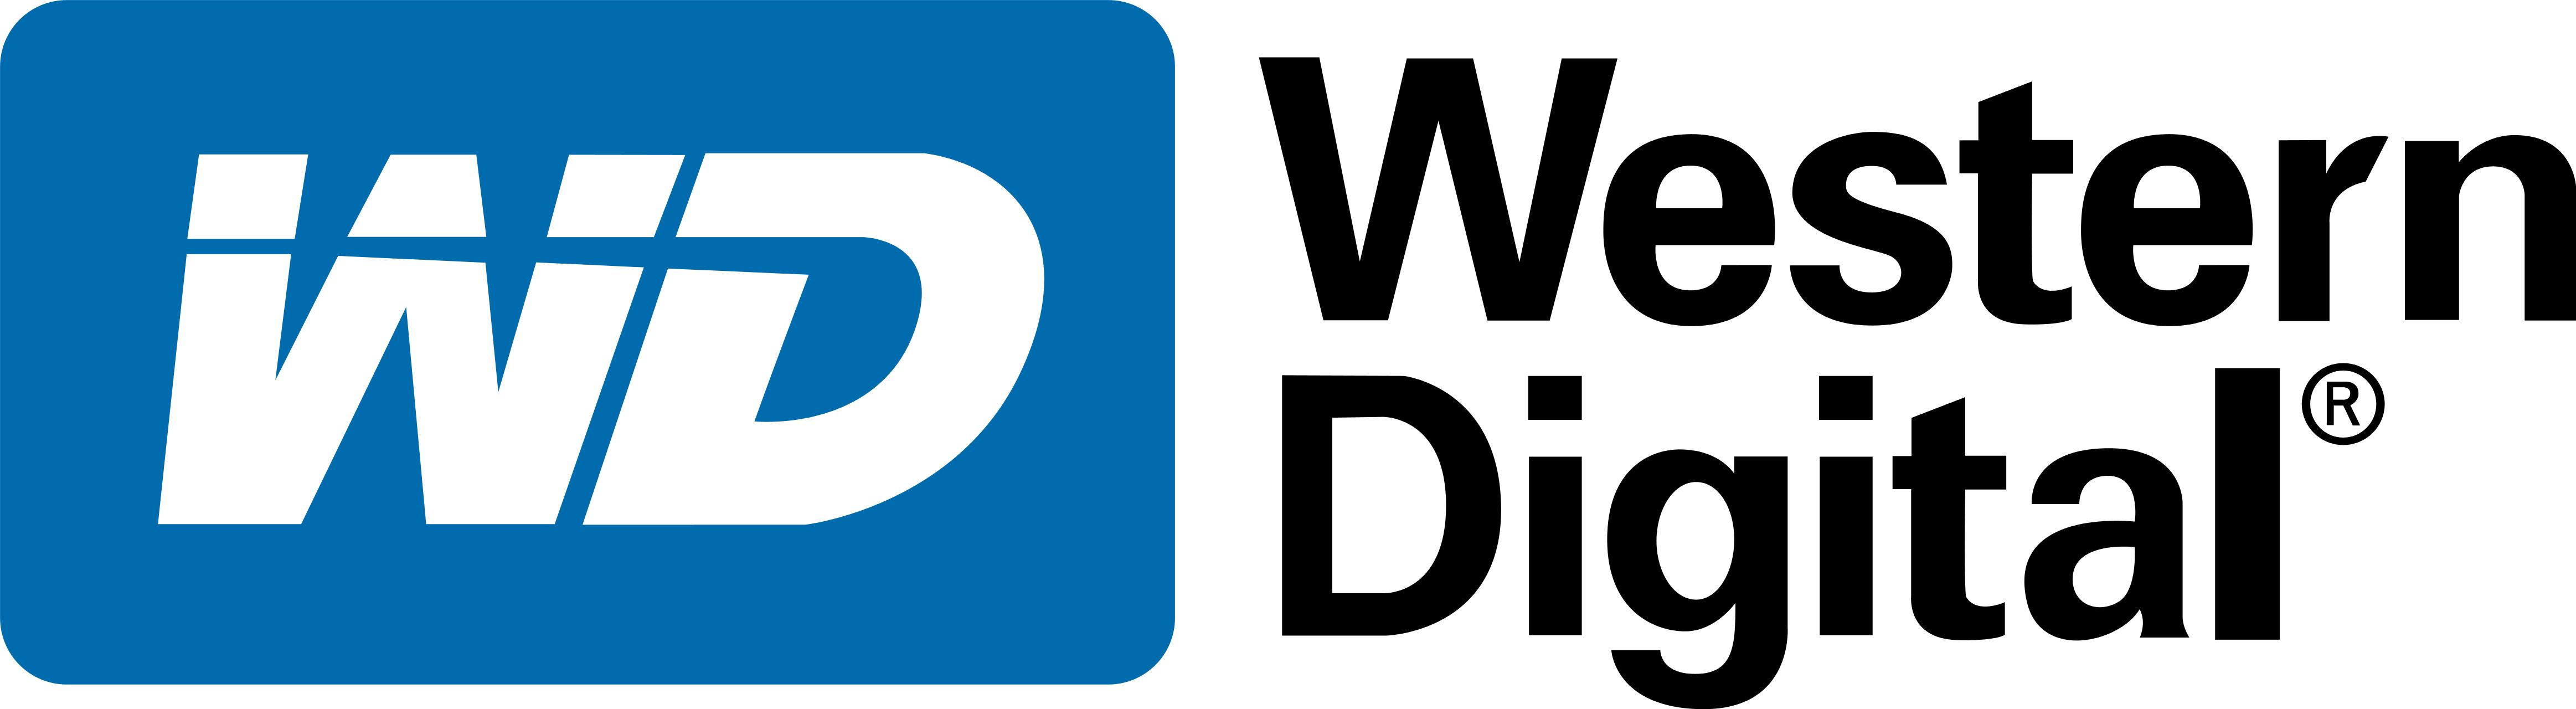 logo-western-digital